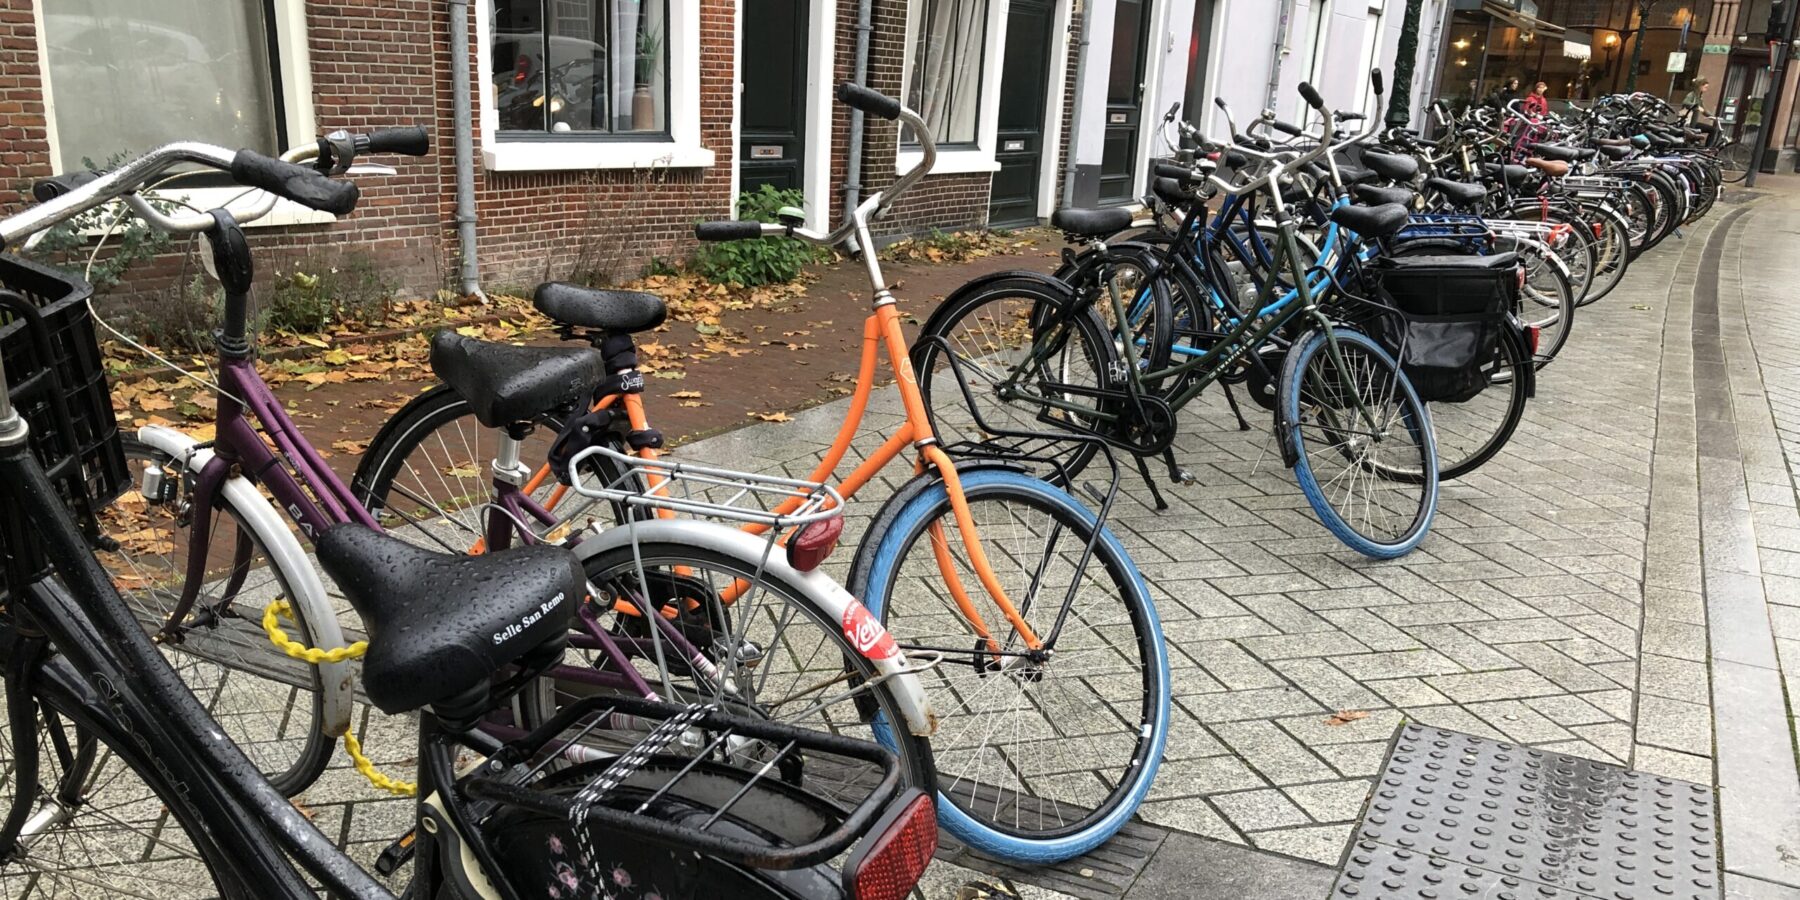 In de Leidse binnenstad slingeren duizenden fietsen rond op plekken waar ze voor veel overlast zorgen. (Foto: Robbert Beurse)